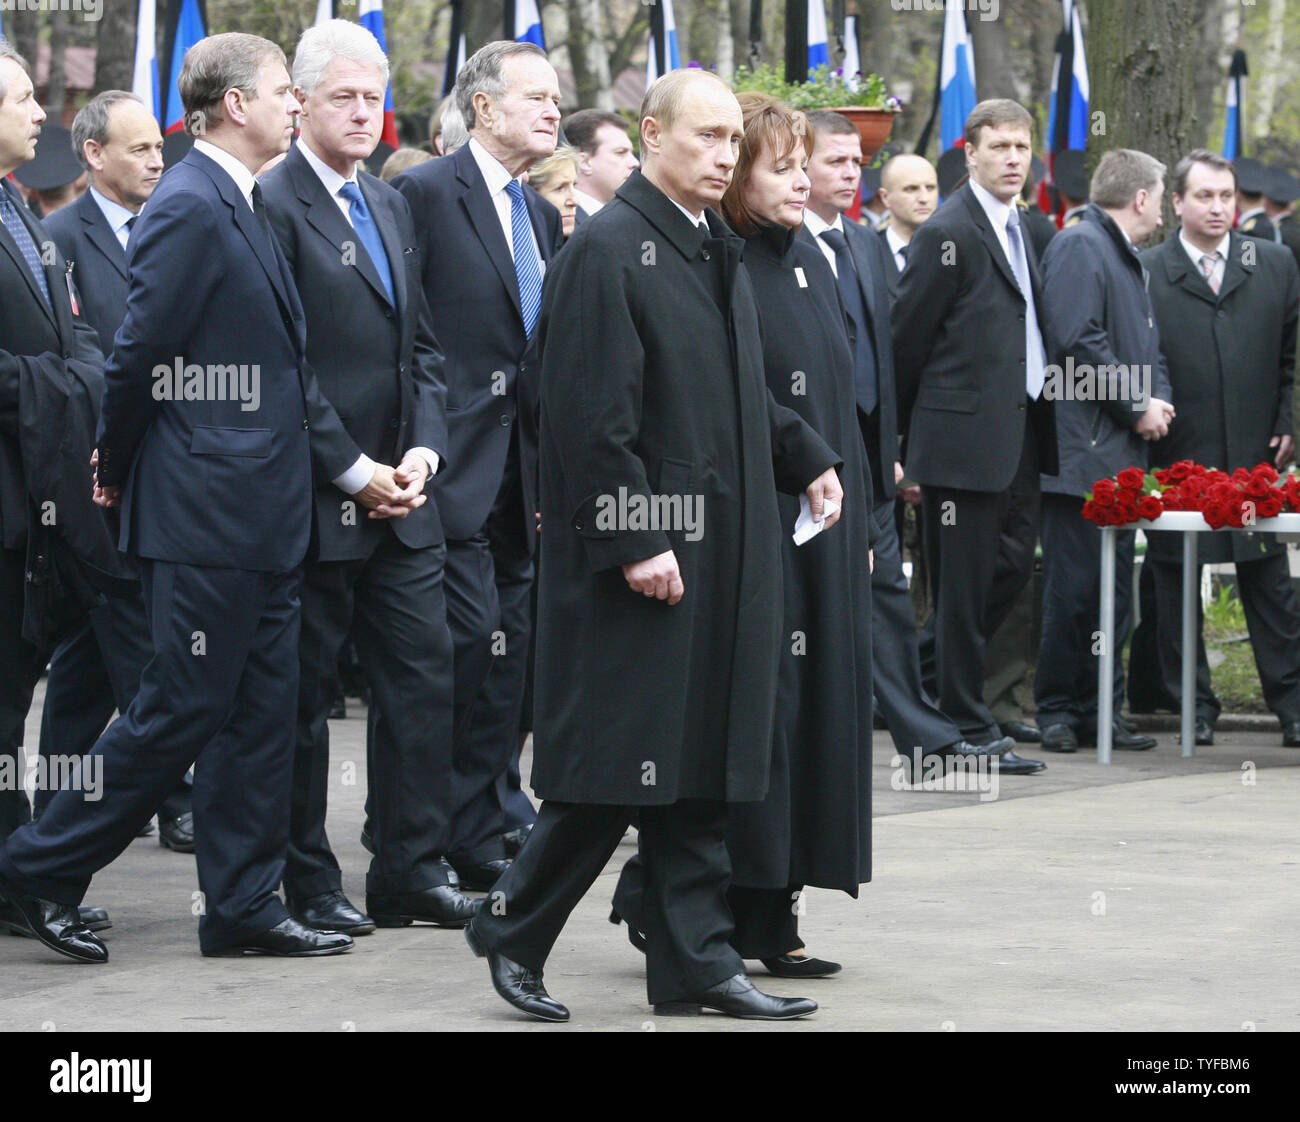 Le président russe Vladimir Poutine (C) avec son épouse Ludmila, l'ex-Présidents Bill Clinton (L) et George H. W. Bush ainsi que des dignitaires et membres de la famille de Boris Eltsine, assister aux funérailles du premier président russe au cimetière Novodievitchi à Moscou le 25 avril 2007. (Photo d'UPI/Anatoli Zhdanov) Banque D'Images